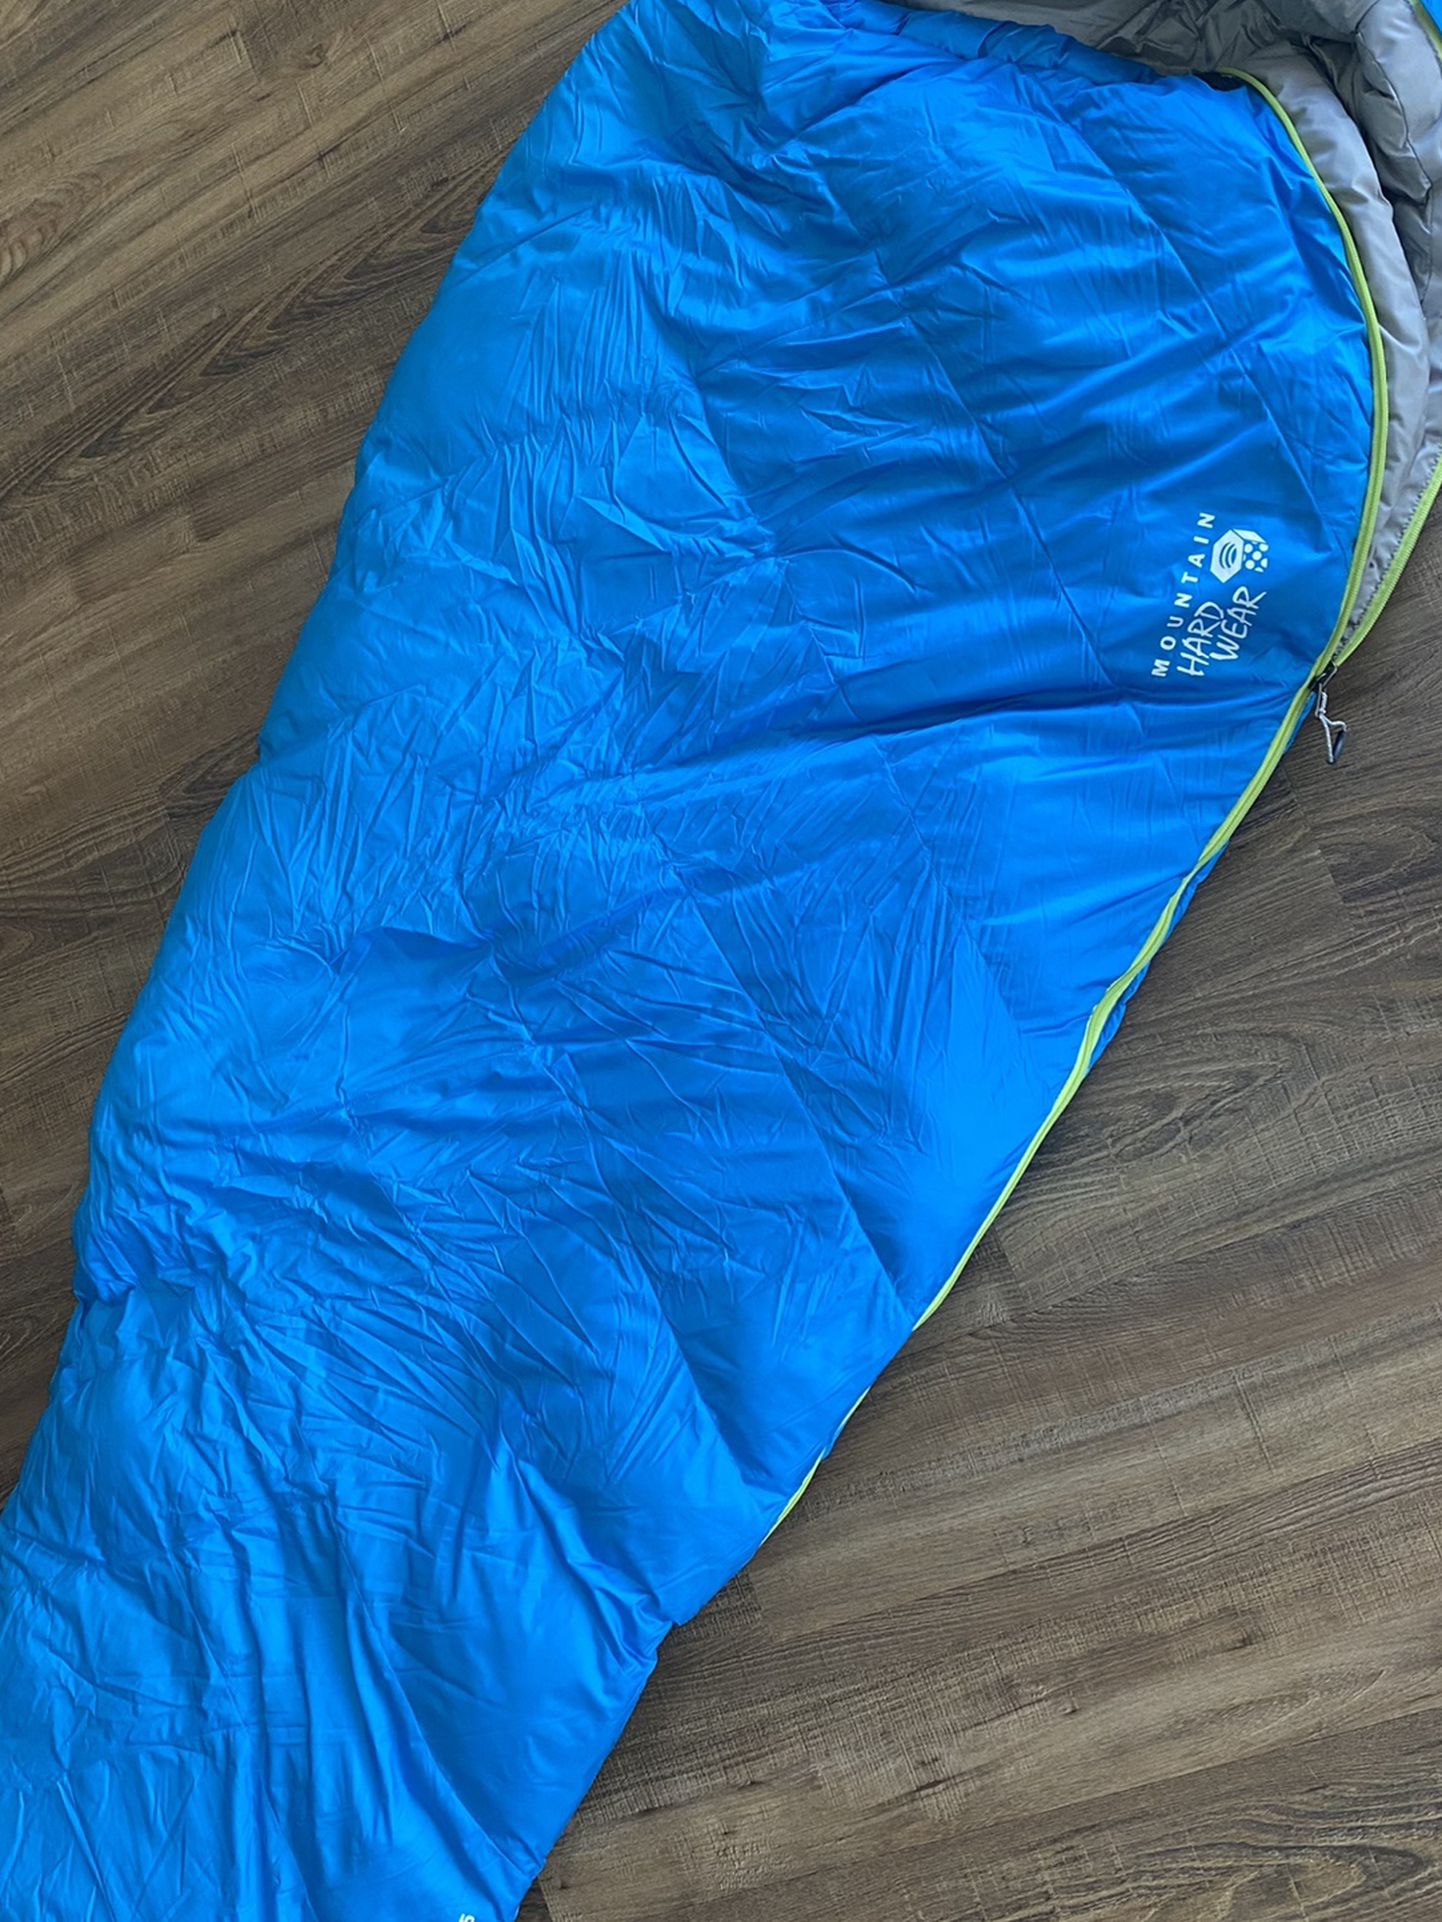 Women’s Sleeping Bag 15 - Mountain Hardware